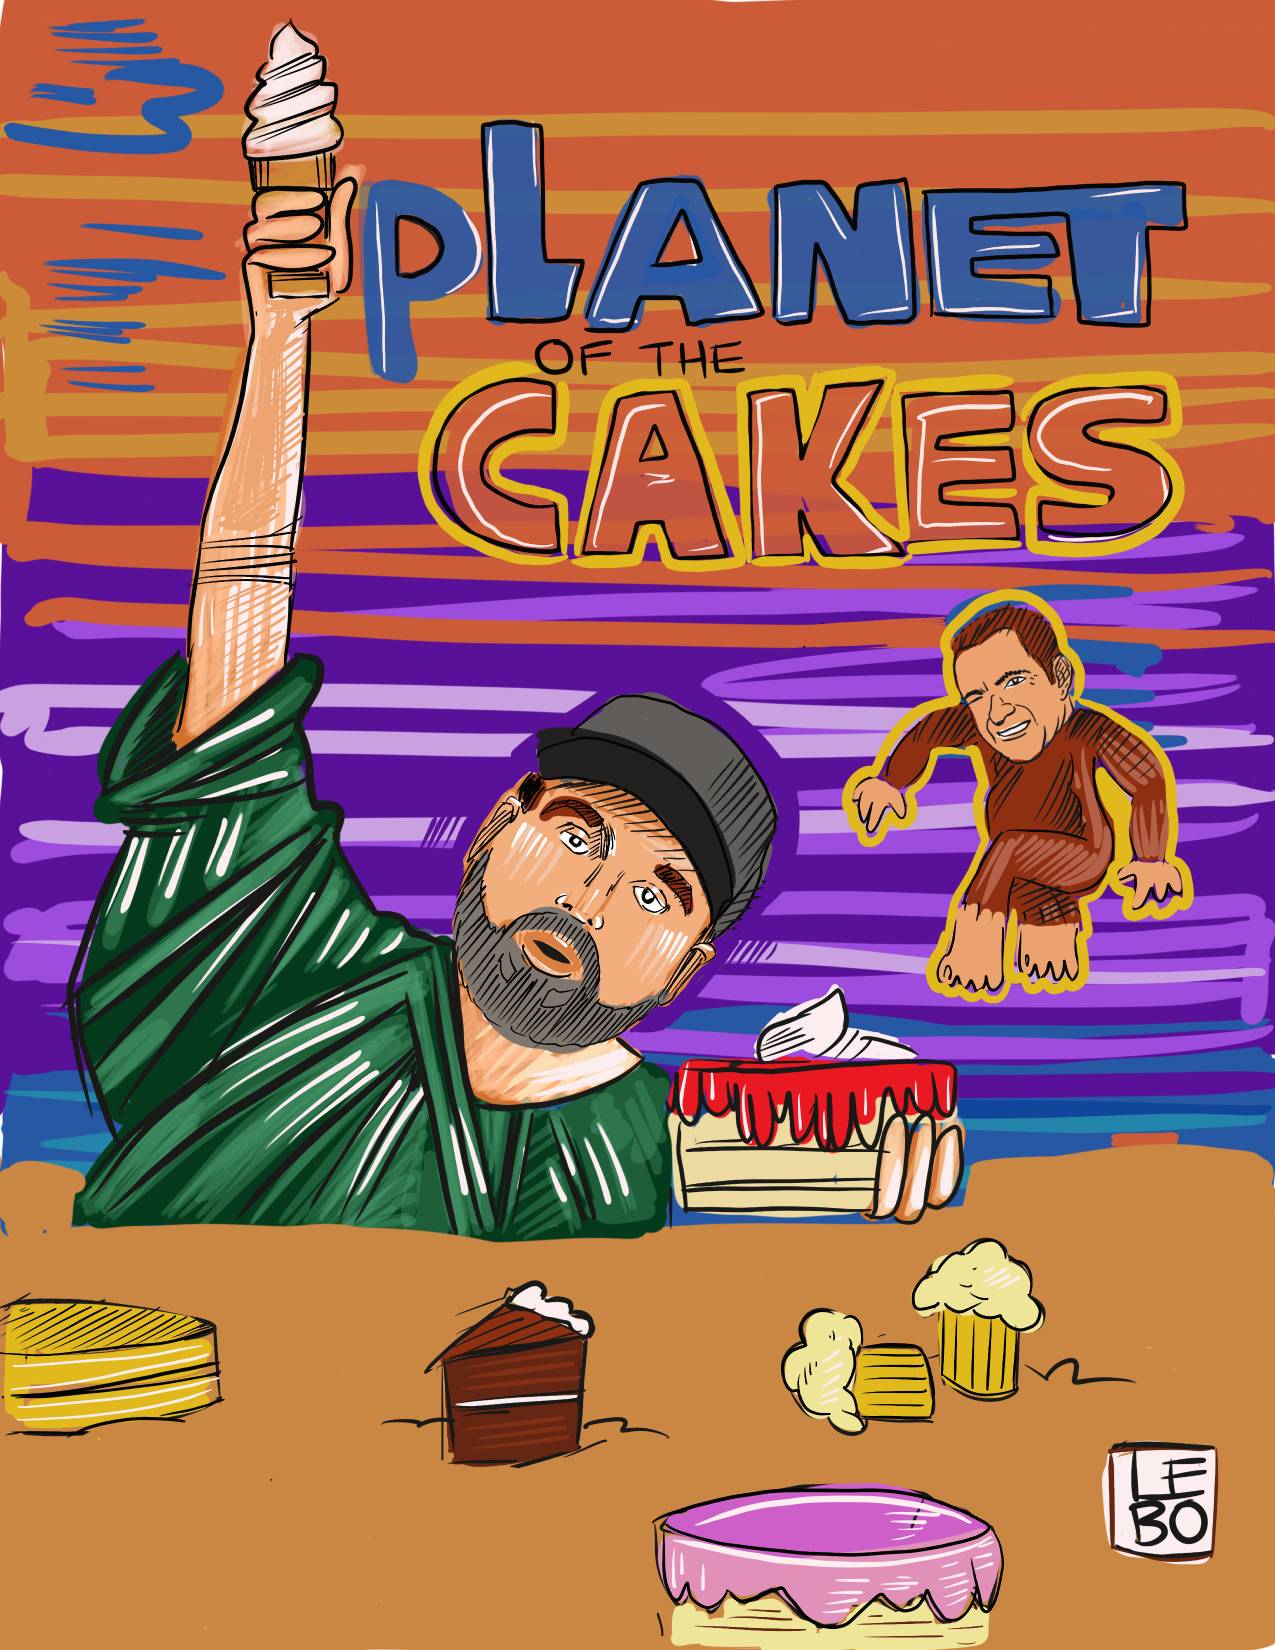 Dannywood - Planet of the Cakes (Starring Dan LeBatard) - Sketchbook Print